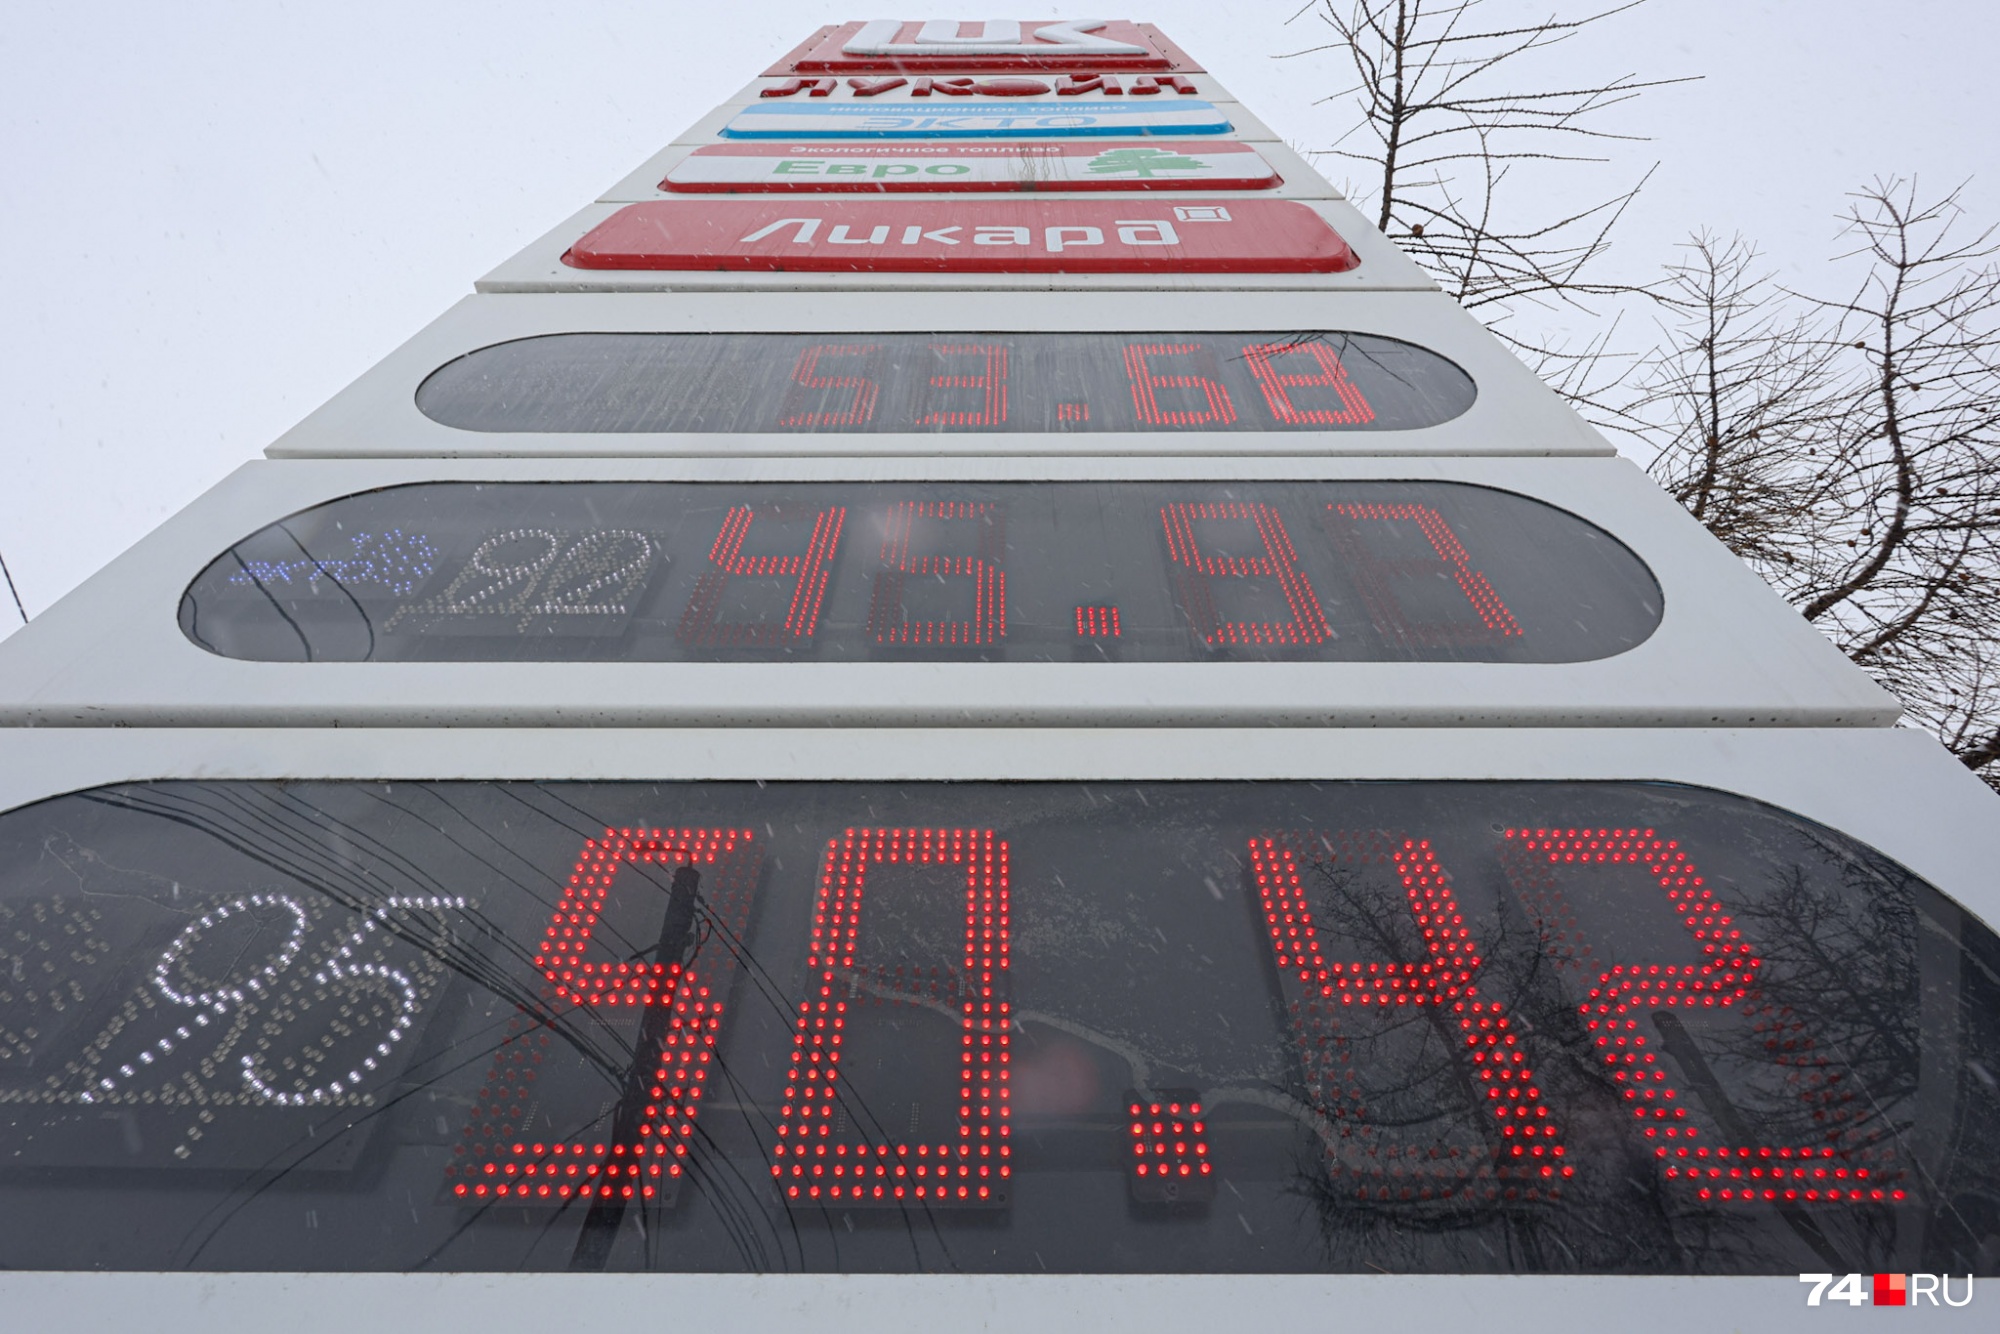 Цены в Челябинске: дизельное топливо — <nobr class="_">53,68 рубля,</nobr> бензин — от <nobr class="_">45,97 рубля</nobr>